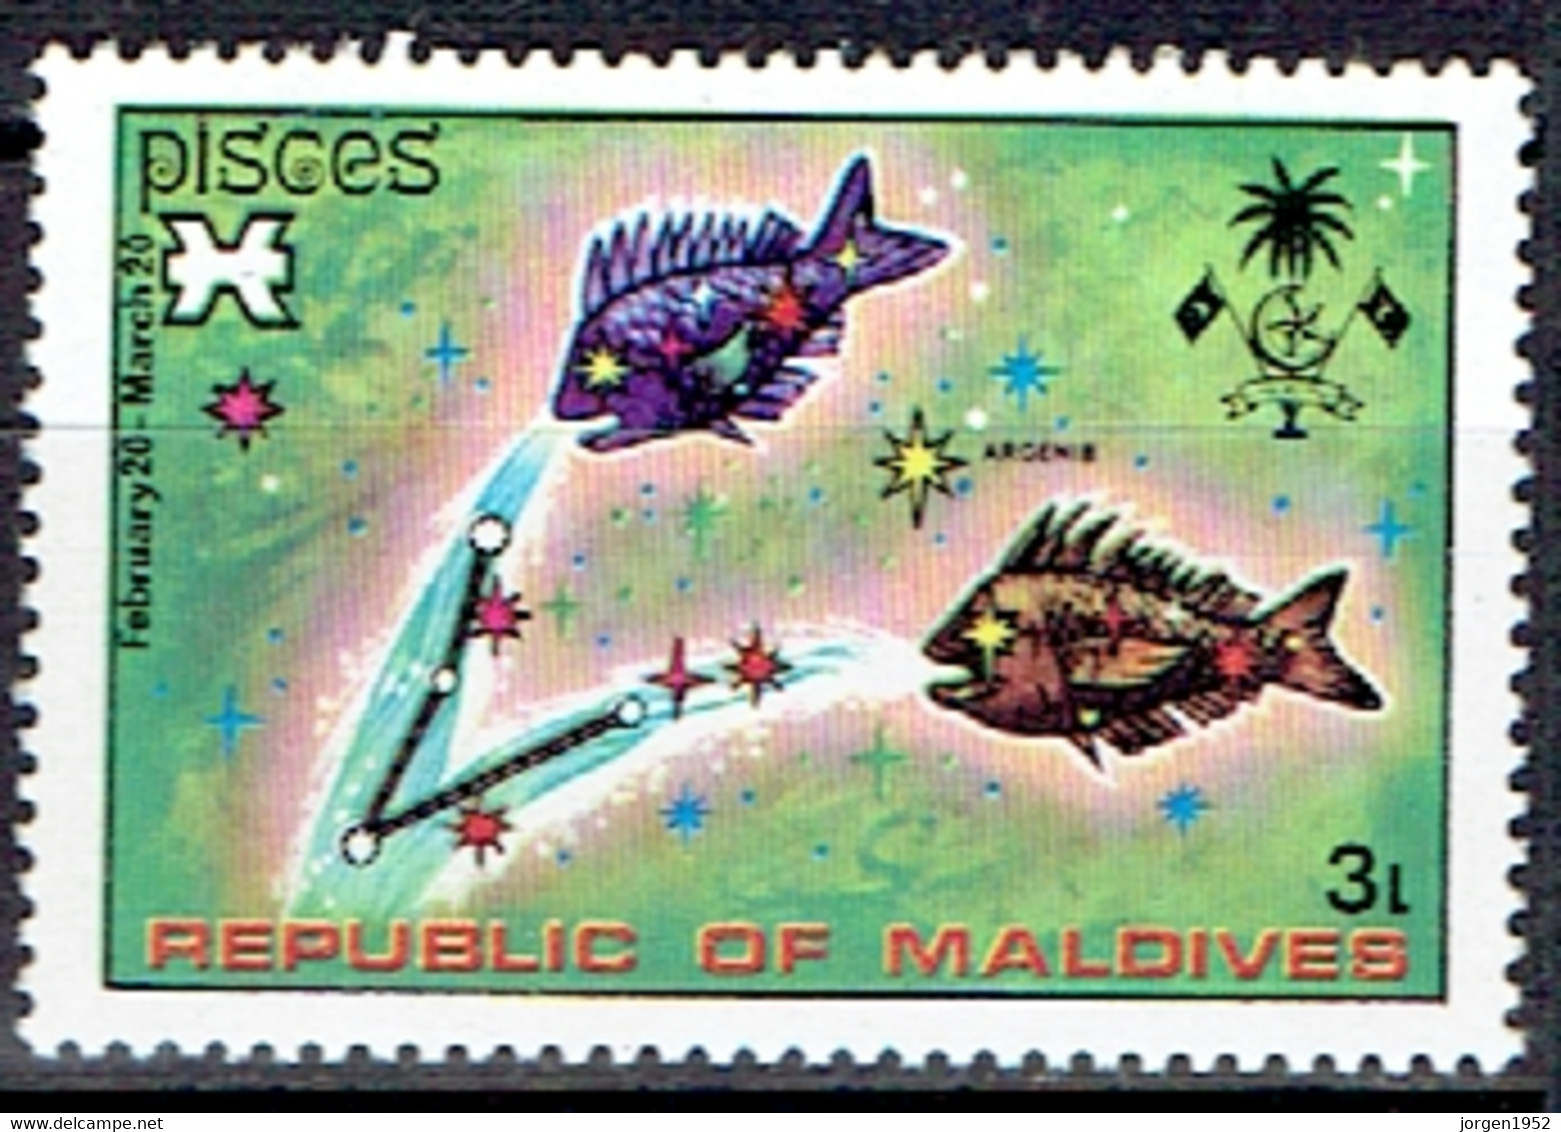 MALDIVES #  FROM  1974 STAMPWORLD 531** - Maldives (1965-...)